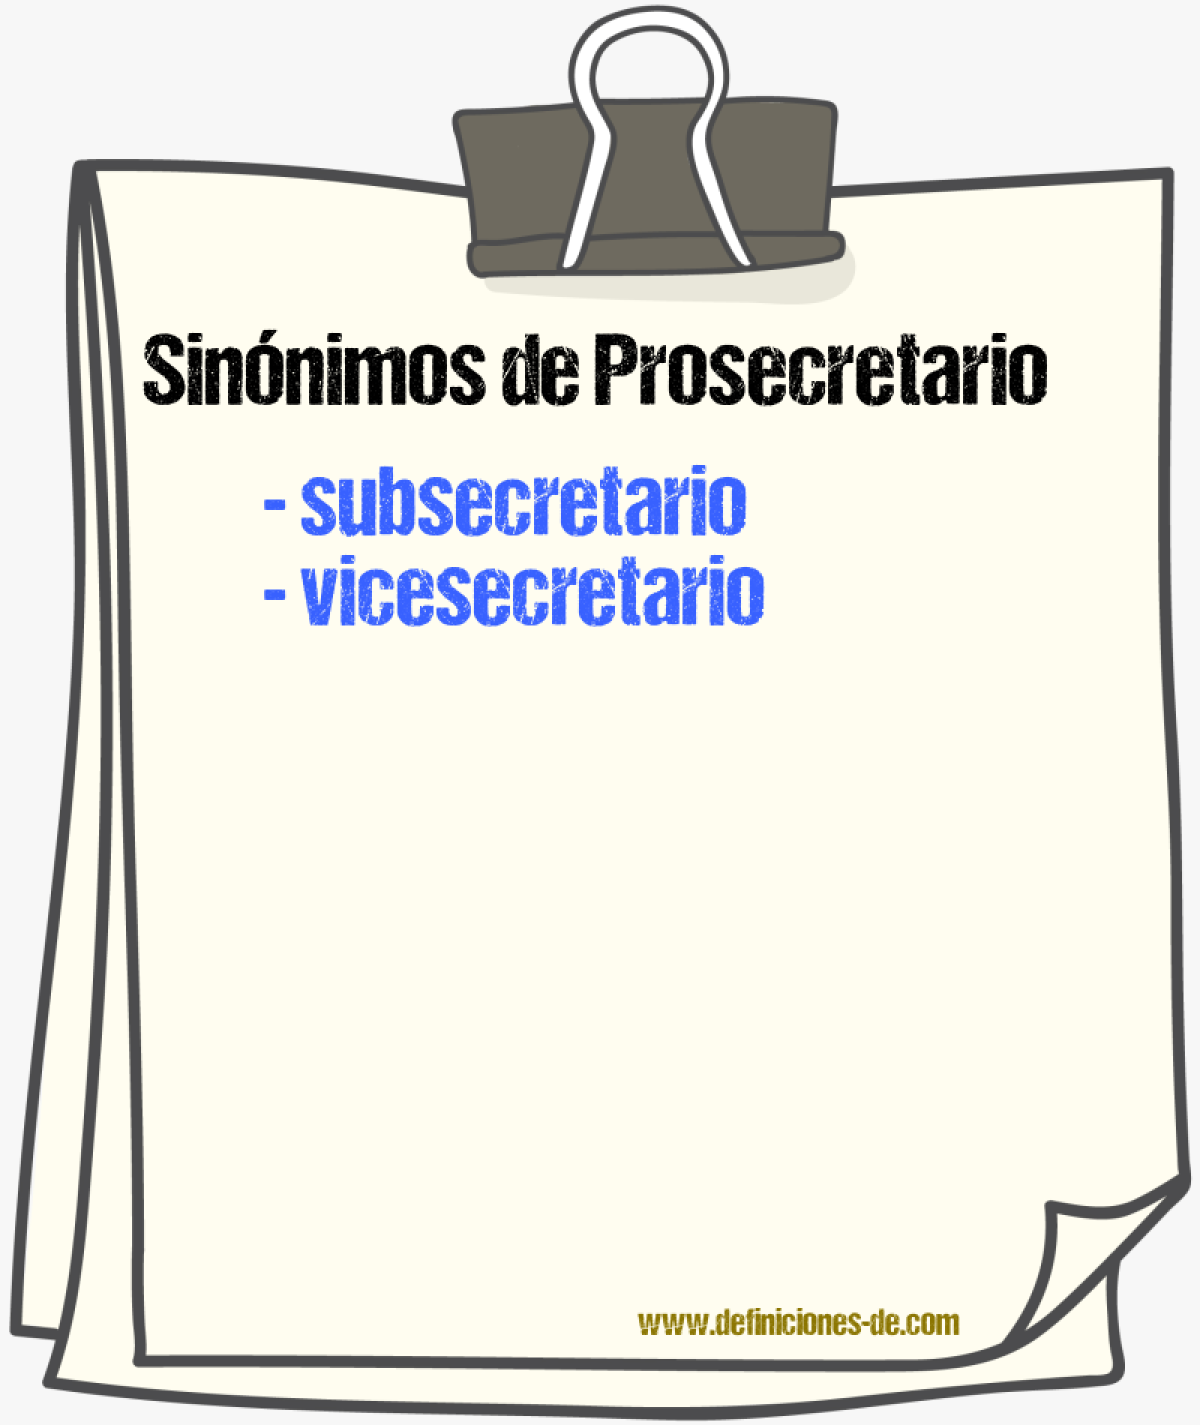 Sinónimos de prosecretario